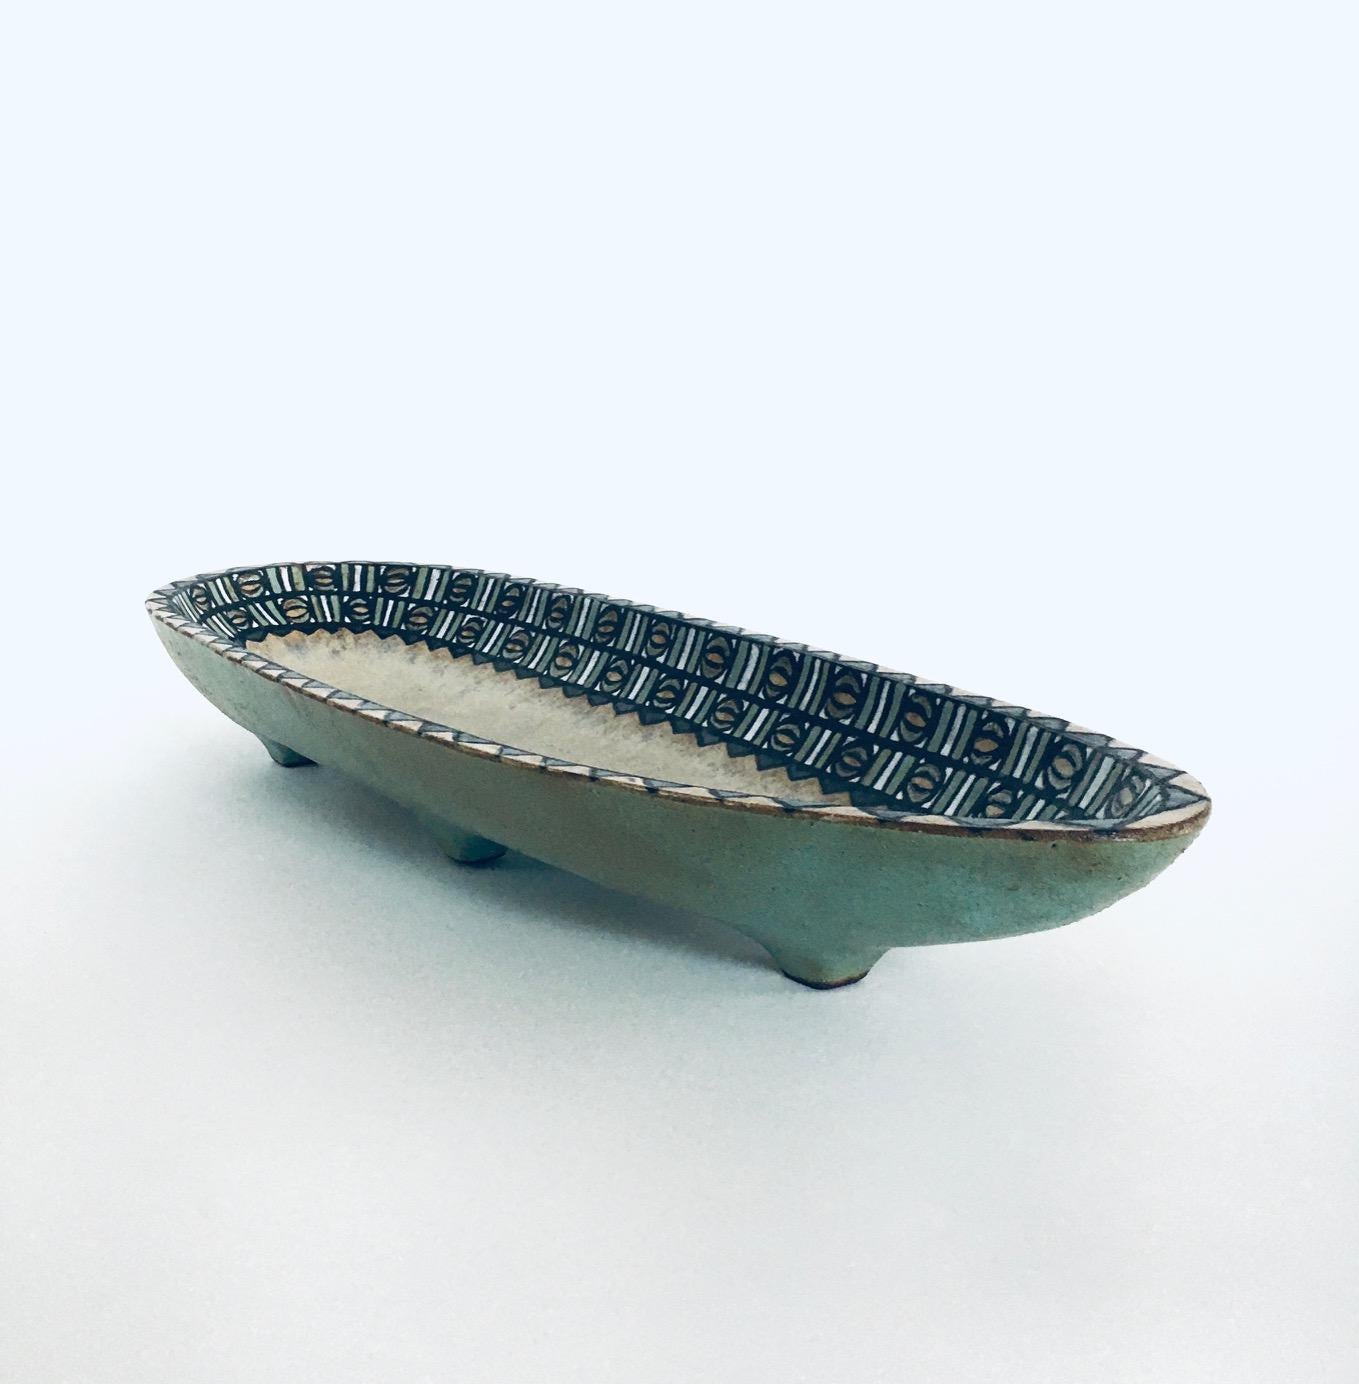 RARE Art Ceramic Dish Attributed to Perignem Amphora Studios, Belgium 1960's For Sale 5